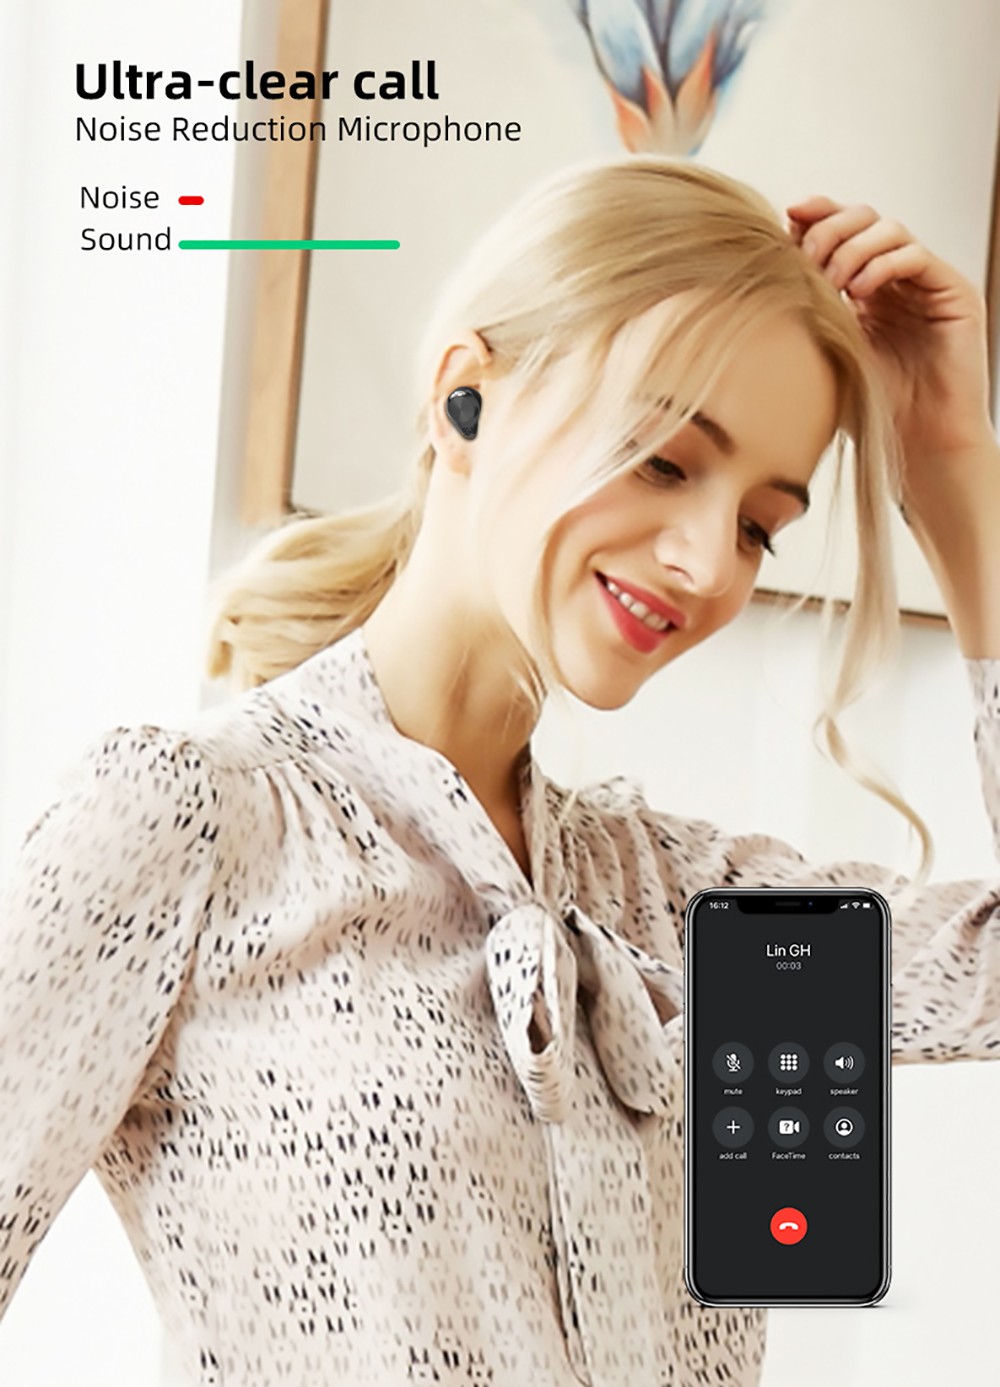 TW18 Wireless Bluetooth 5.1 In-ear Earphones HiFi Sound Noise Canceling - Black